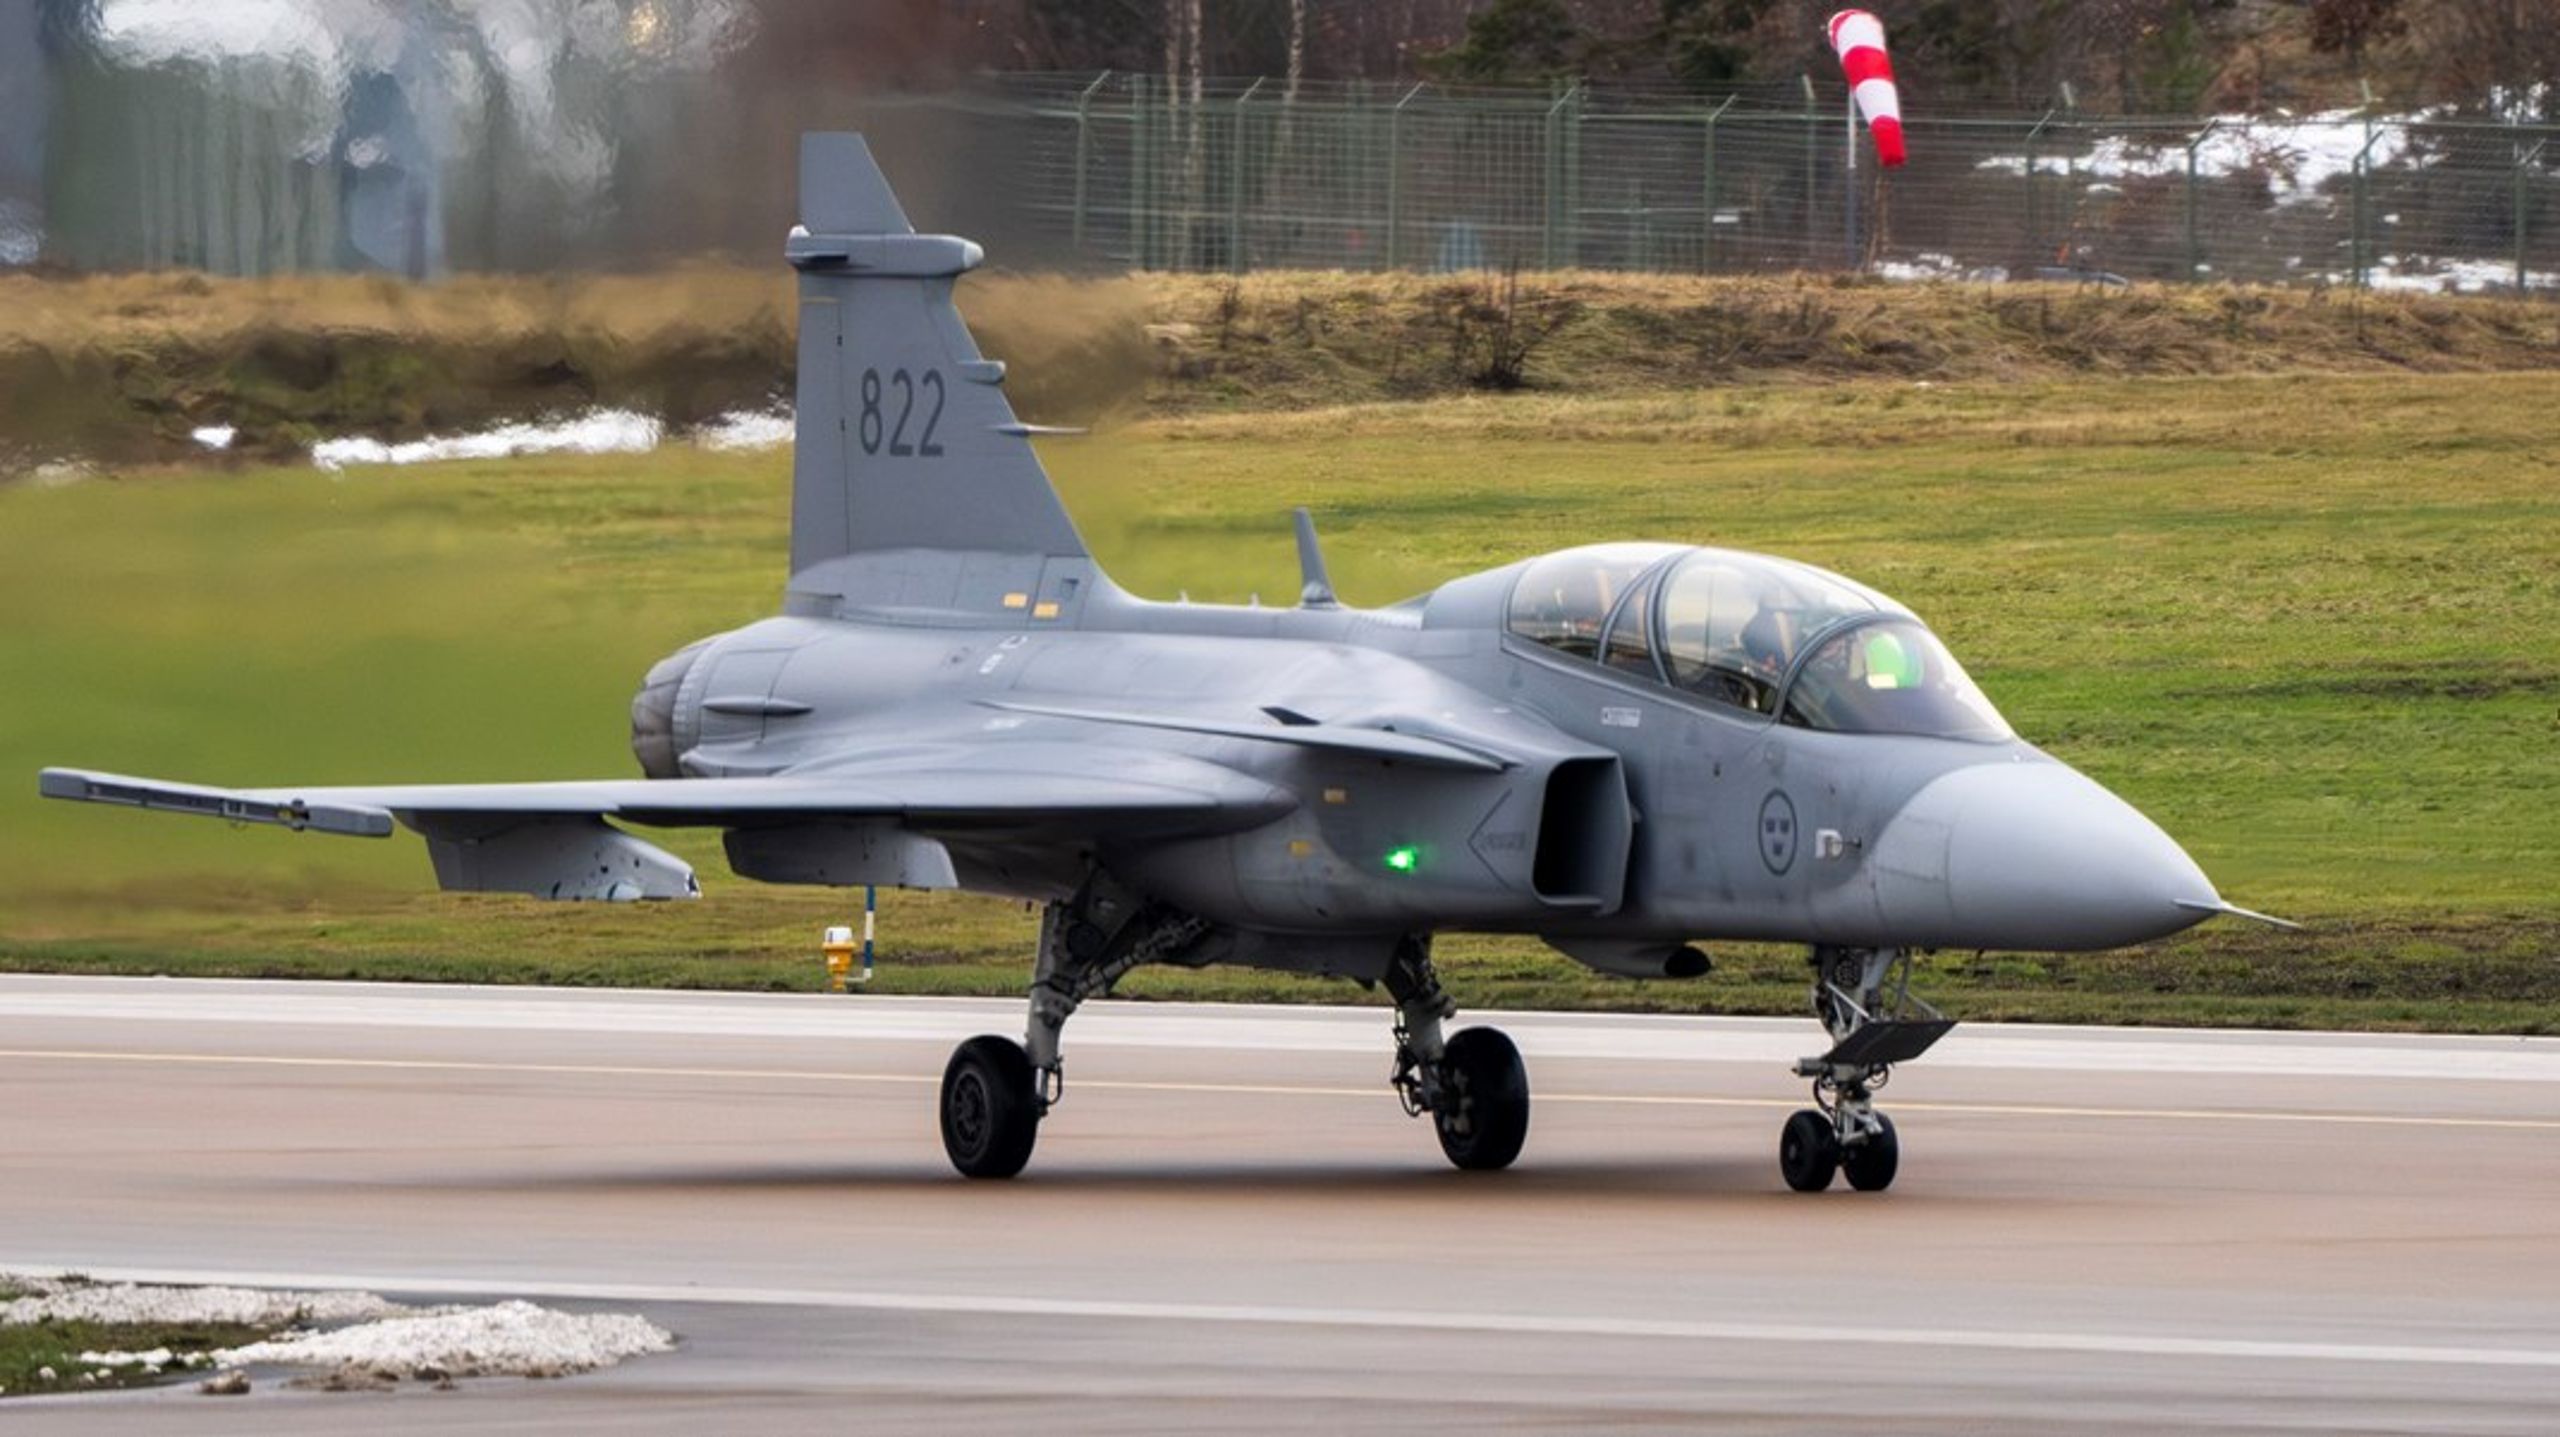 Stridsflygplan, granatgevär och radarsystem. Tre återkommande varor i Sveriges vapensexport.